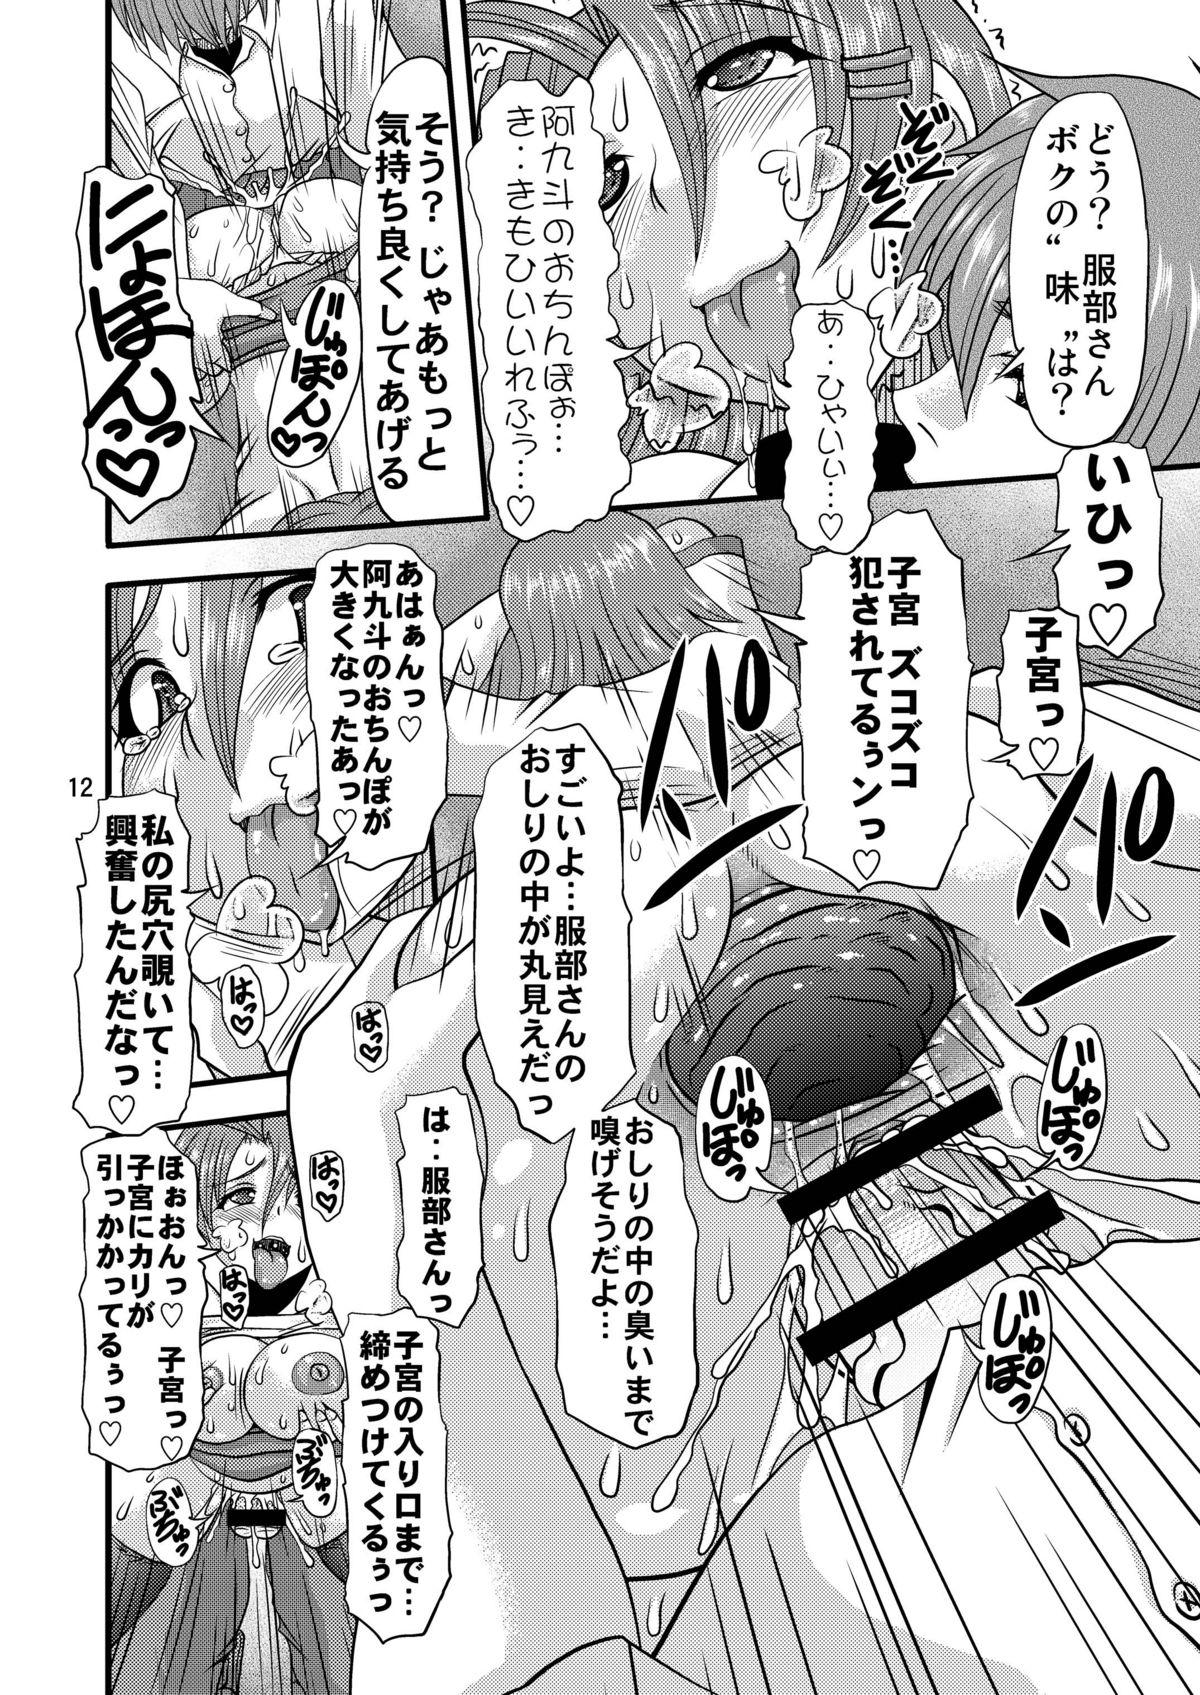 Tetona Fundoshi Momojiri Musume - Ichiban ushiro no daimaou 3some - Page 12